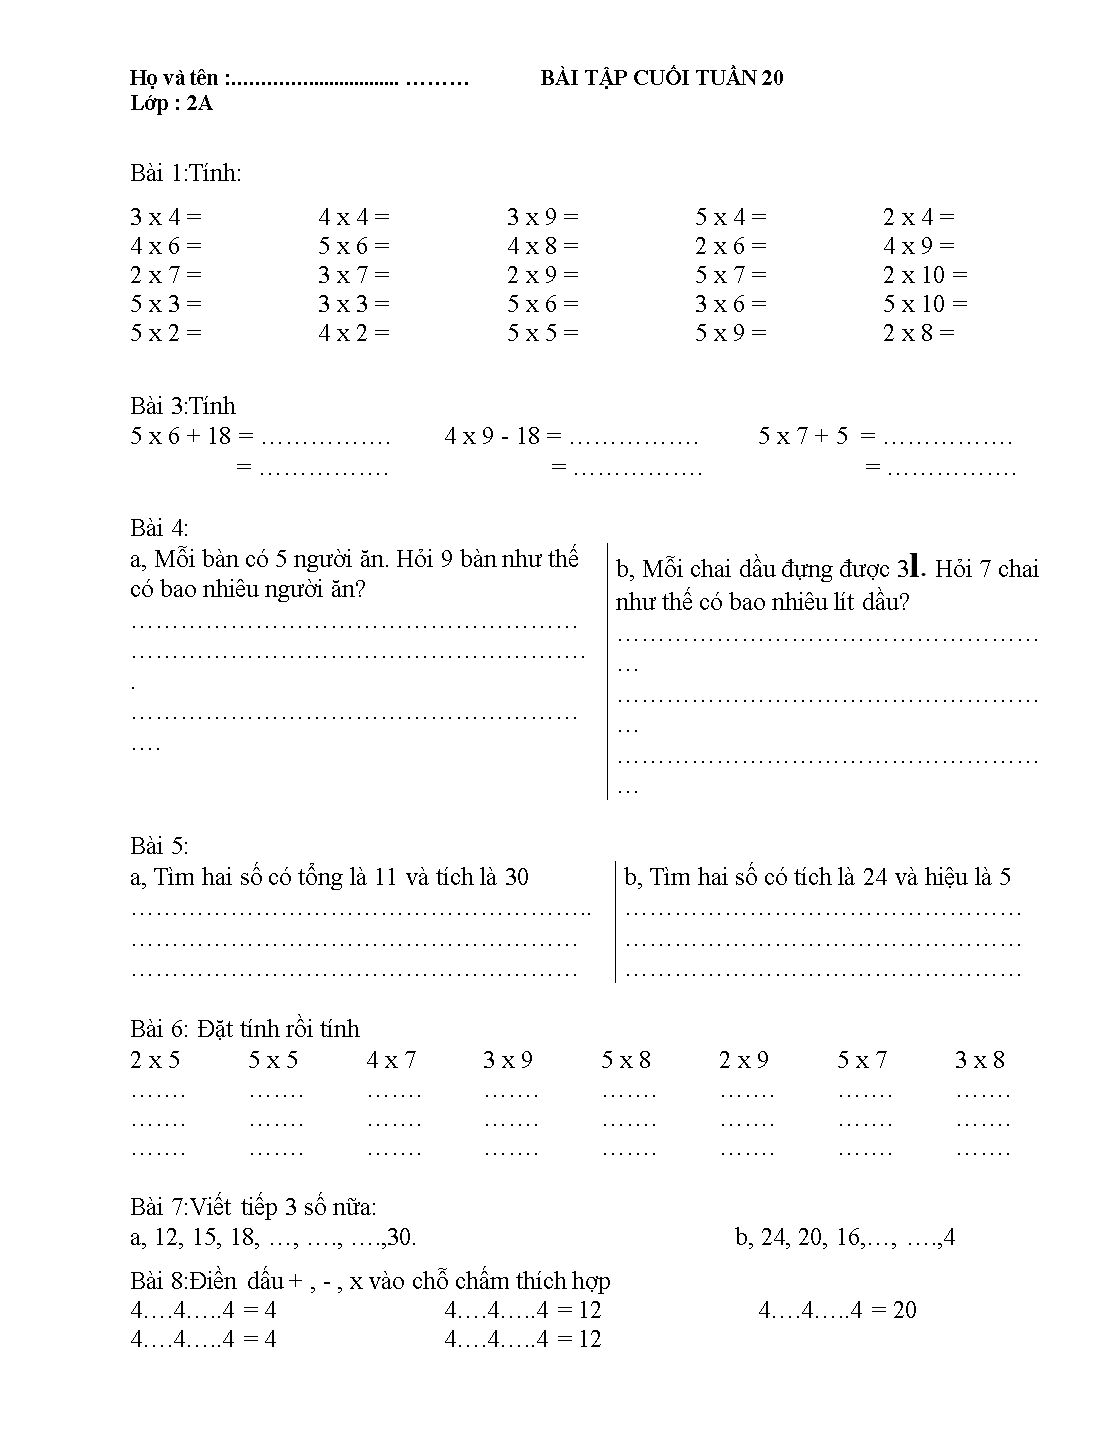 Phiếu bài tập cuối tuần lớp 2 - Tuần 20 - Môn: Toán + Tiếng Việt trang 7